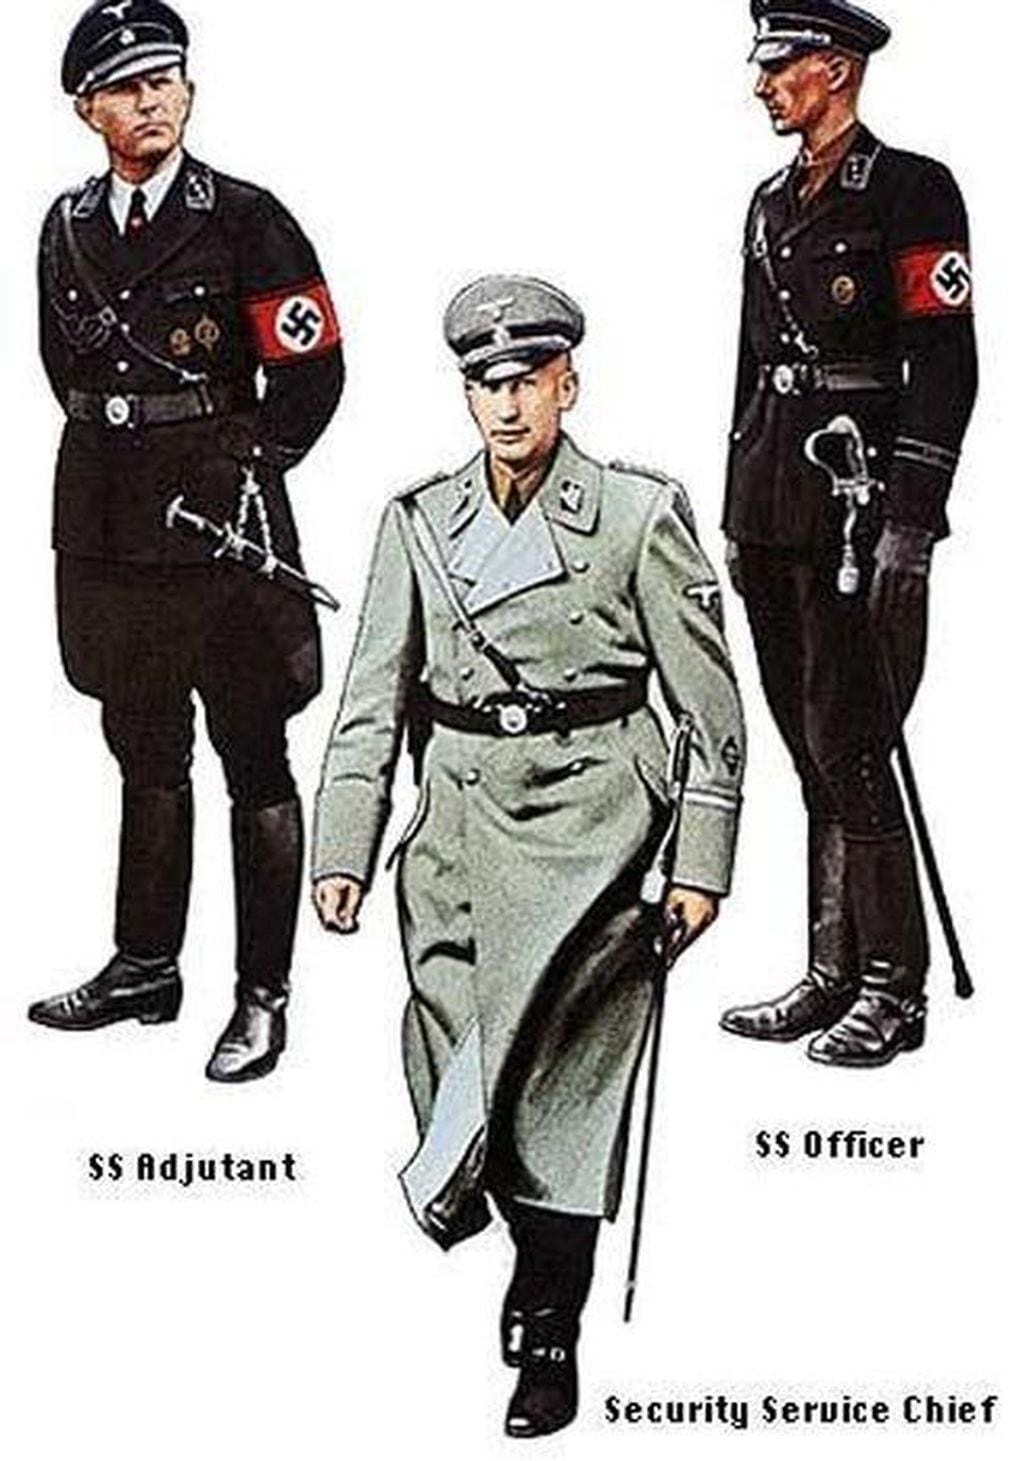 Hugo Boss es una de las tantas marcas que tienen un pasado oscuro relacionado con el nazismo.